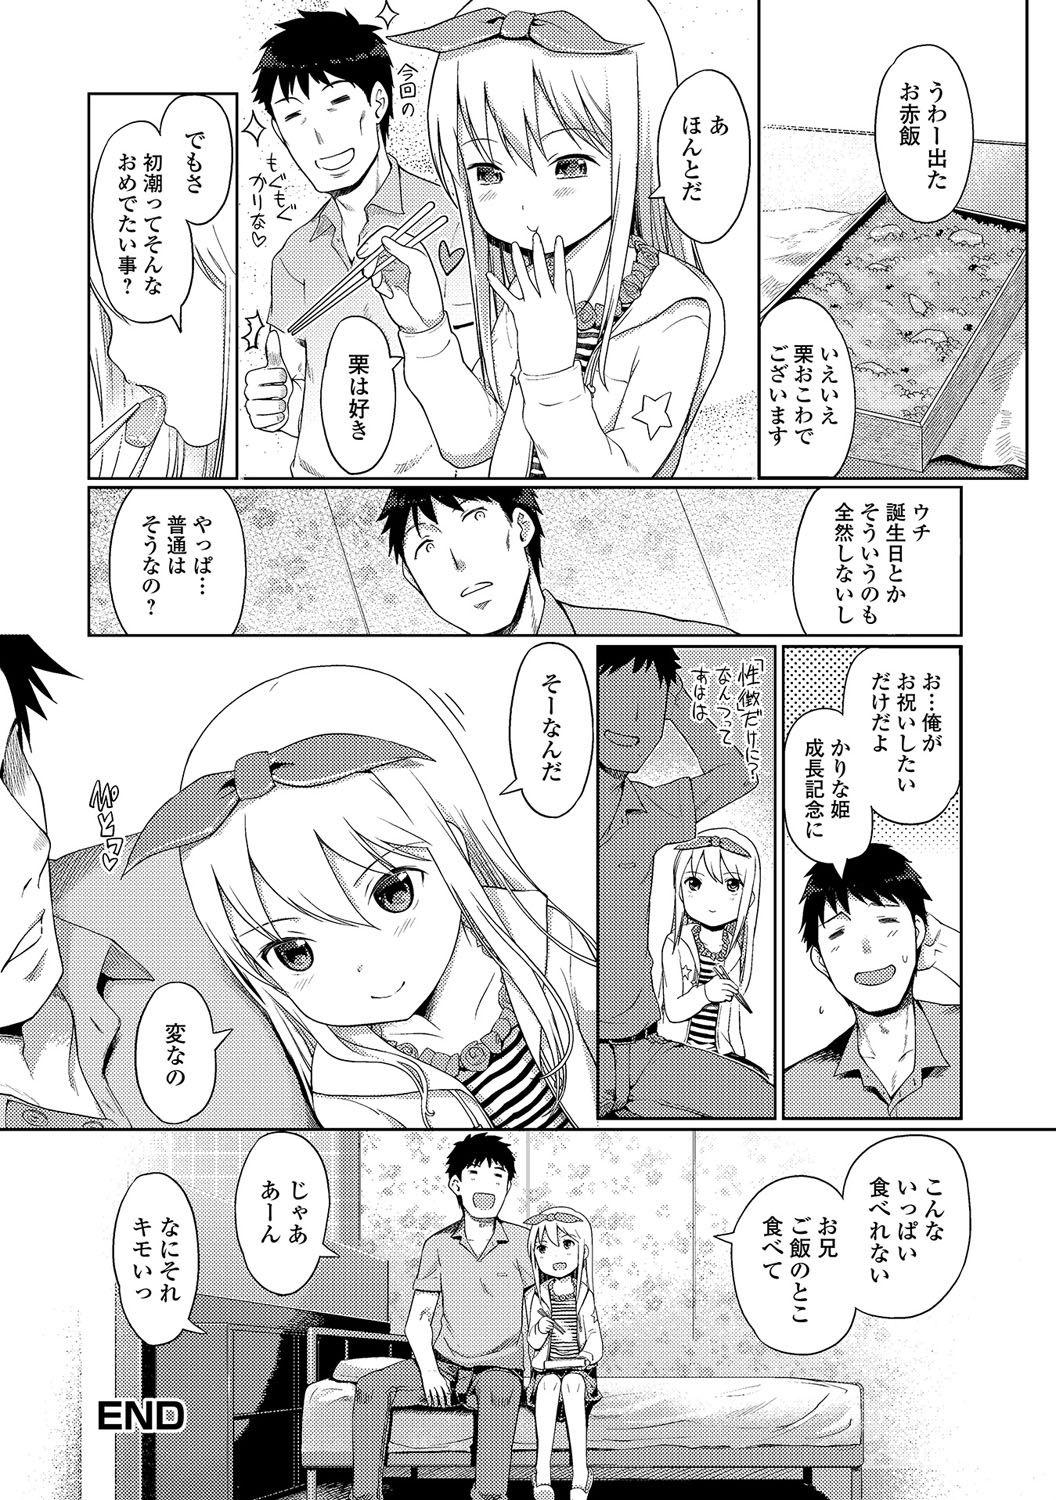 Puba [Kiya Shii] Awa no Ohime-sama #1-6 Rico - Page 92